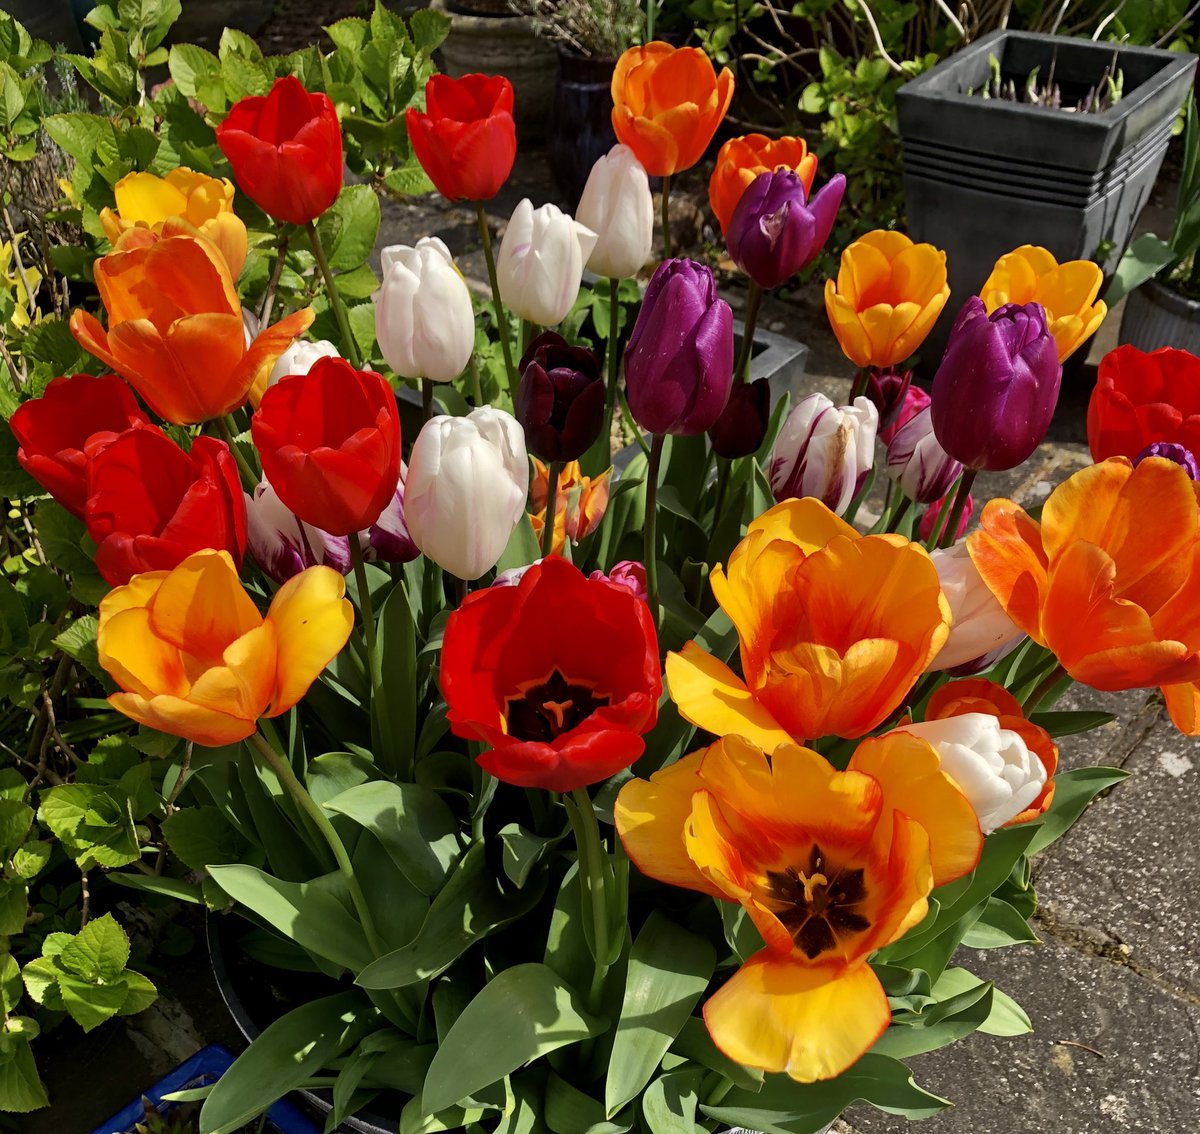 A pot of Joy #Tulips #Sunny #Colourful #Flowers #Bulbs #MyGarden